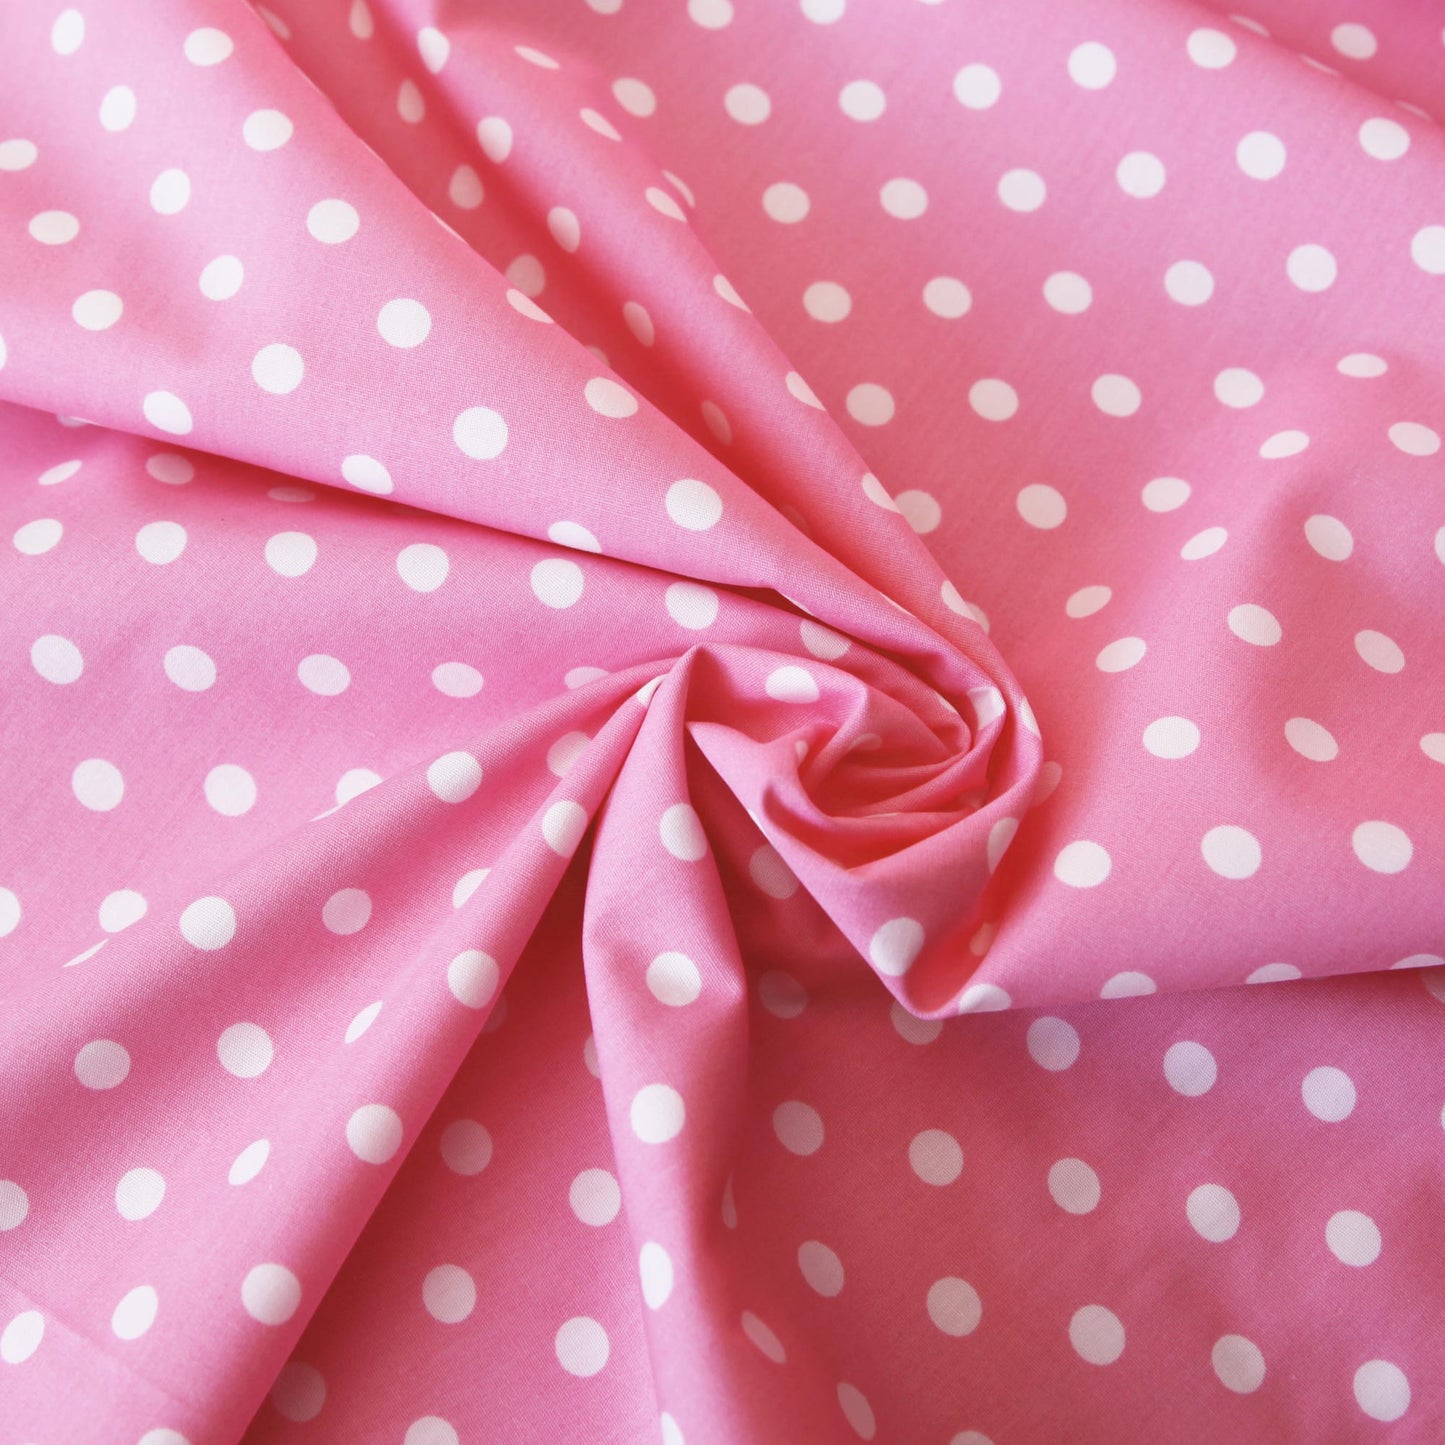 Baumwollstoff mit Punkten / Popeline " 1 cm weiße Dots auf rosa" - Patchwork 100% Baumwolle babyrosa - Stoffe Kudellino